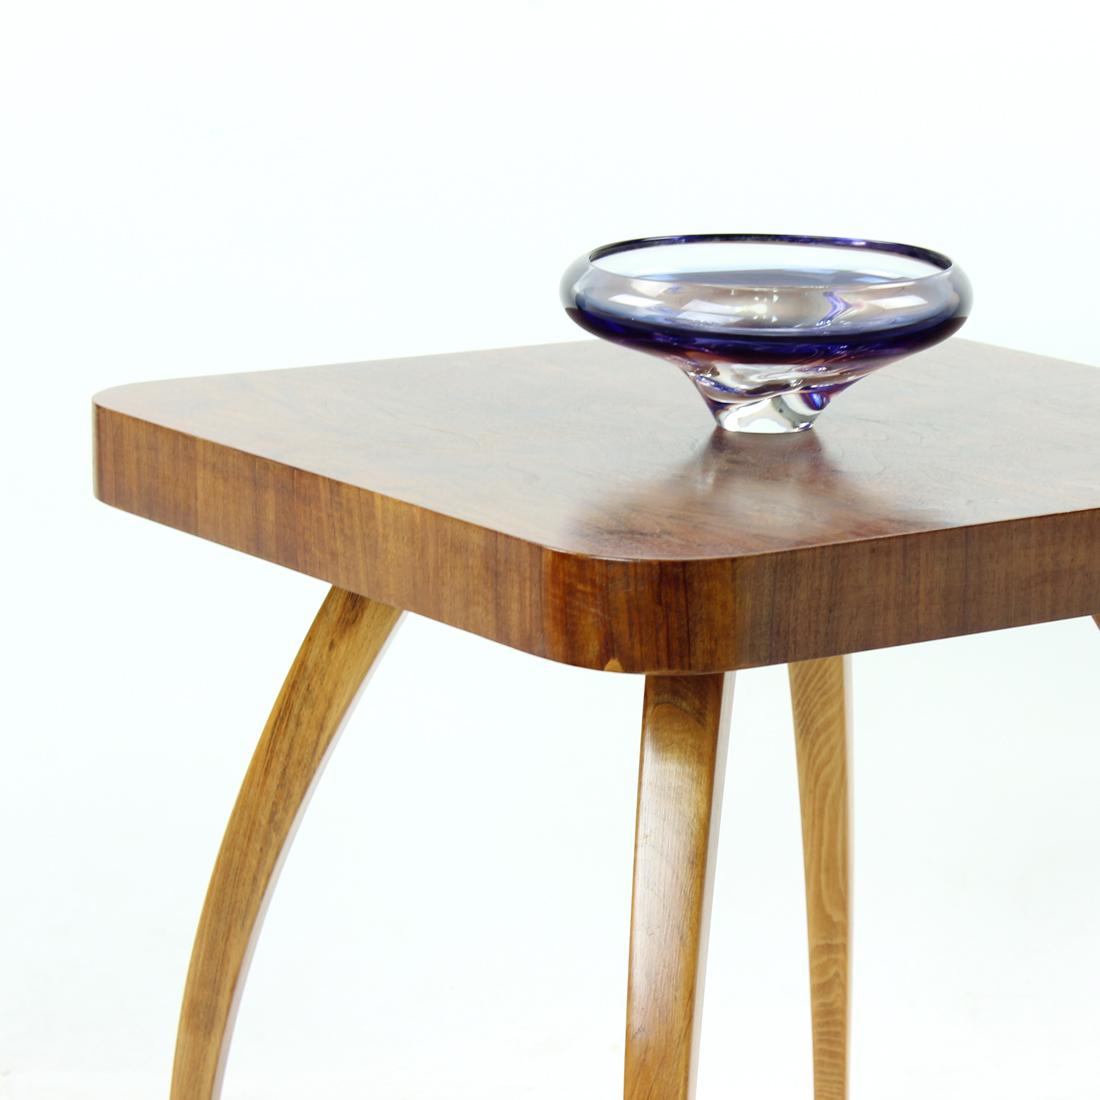 Der einzigartige Stil dieses Tisches ist auf der ganzen Welt bekannt. Entworfen von Jindrich Halabala für UP Zavody in der Tschechoslowakei in den 1930er Jahren. Das Tischdesign wird seit Jahrzehnten geschätzt. Der Tisch hat eine starke, dicke